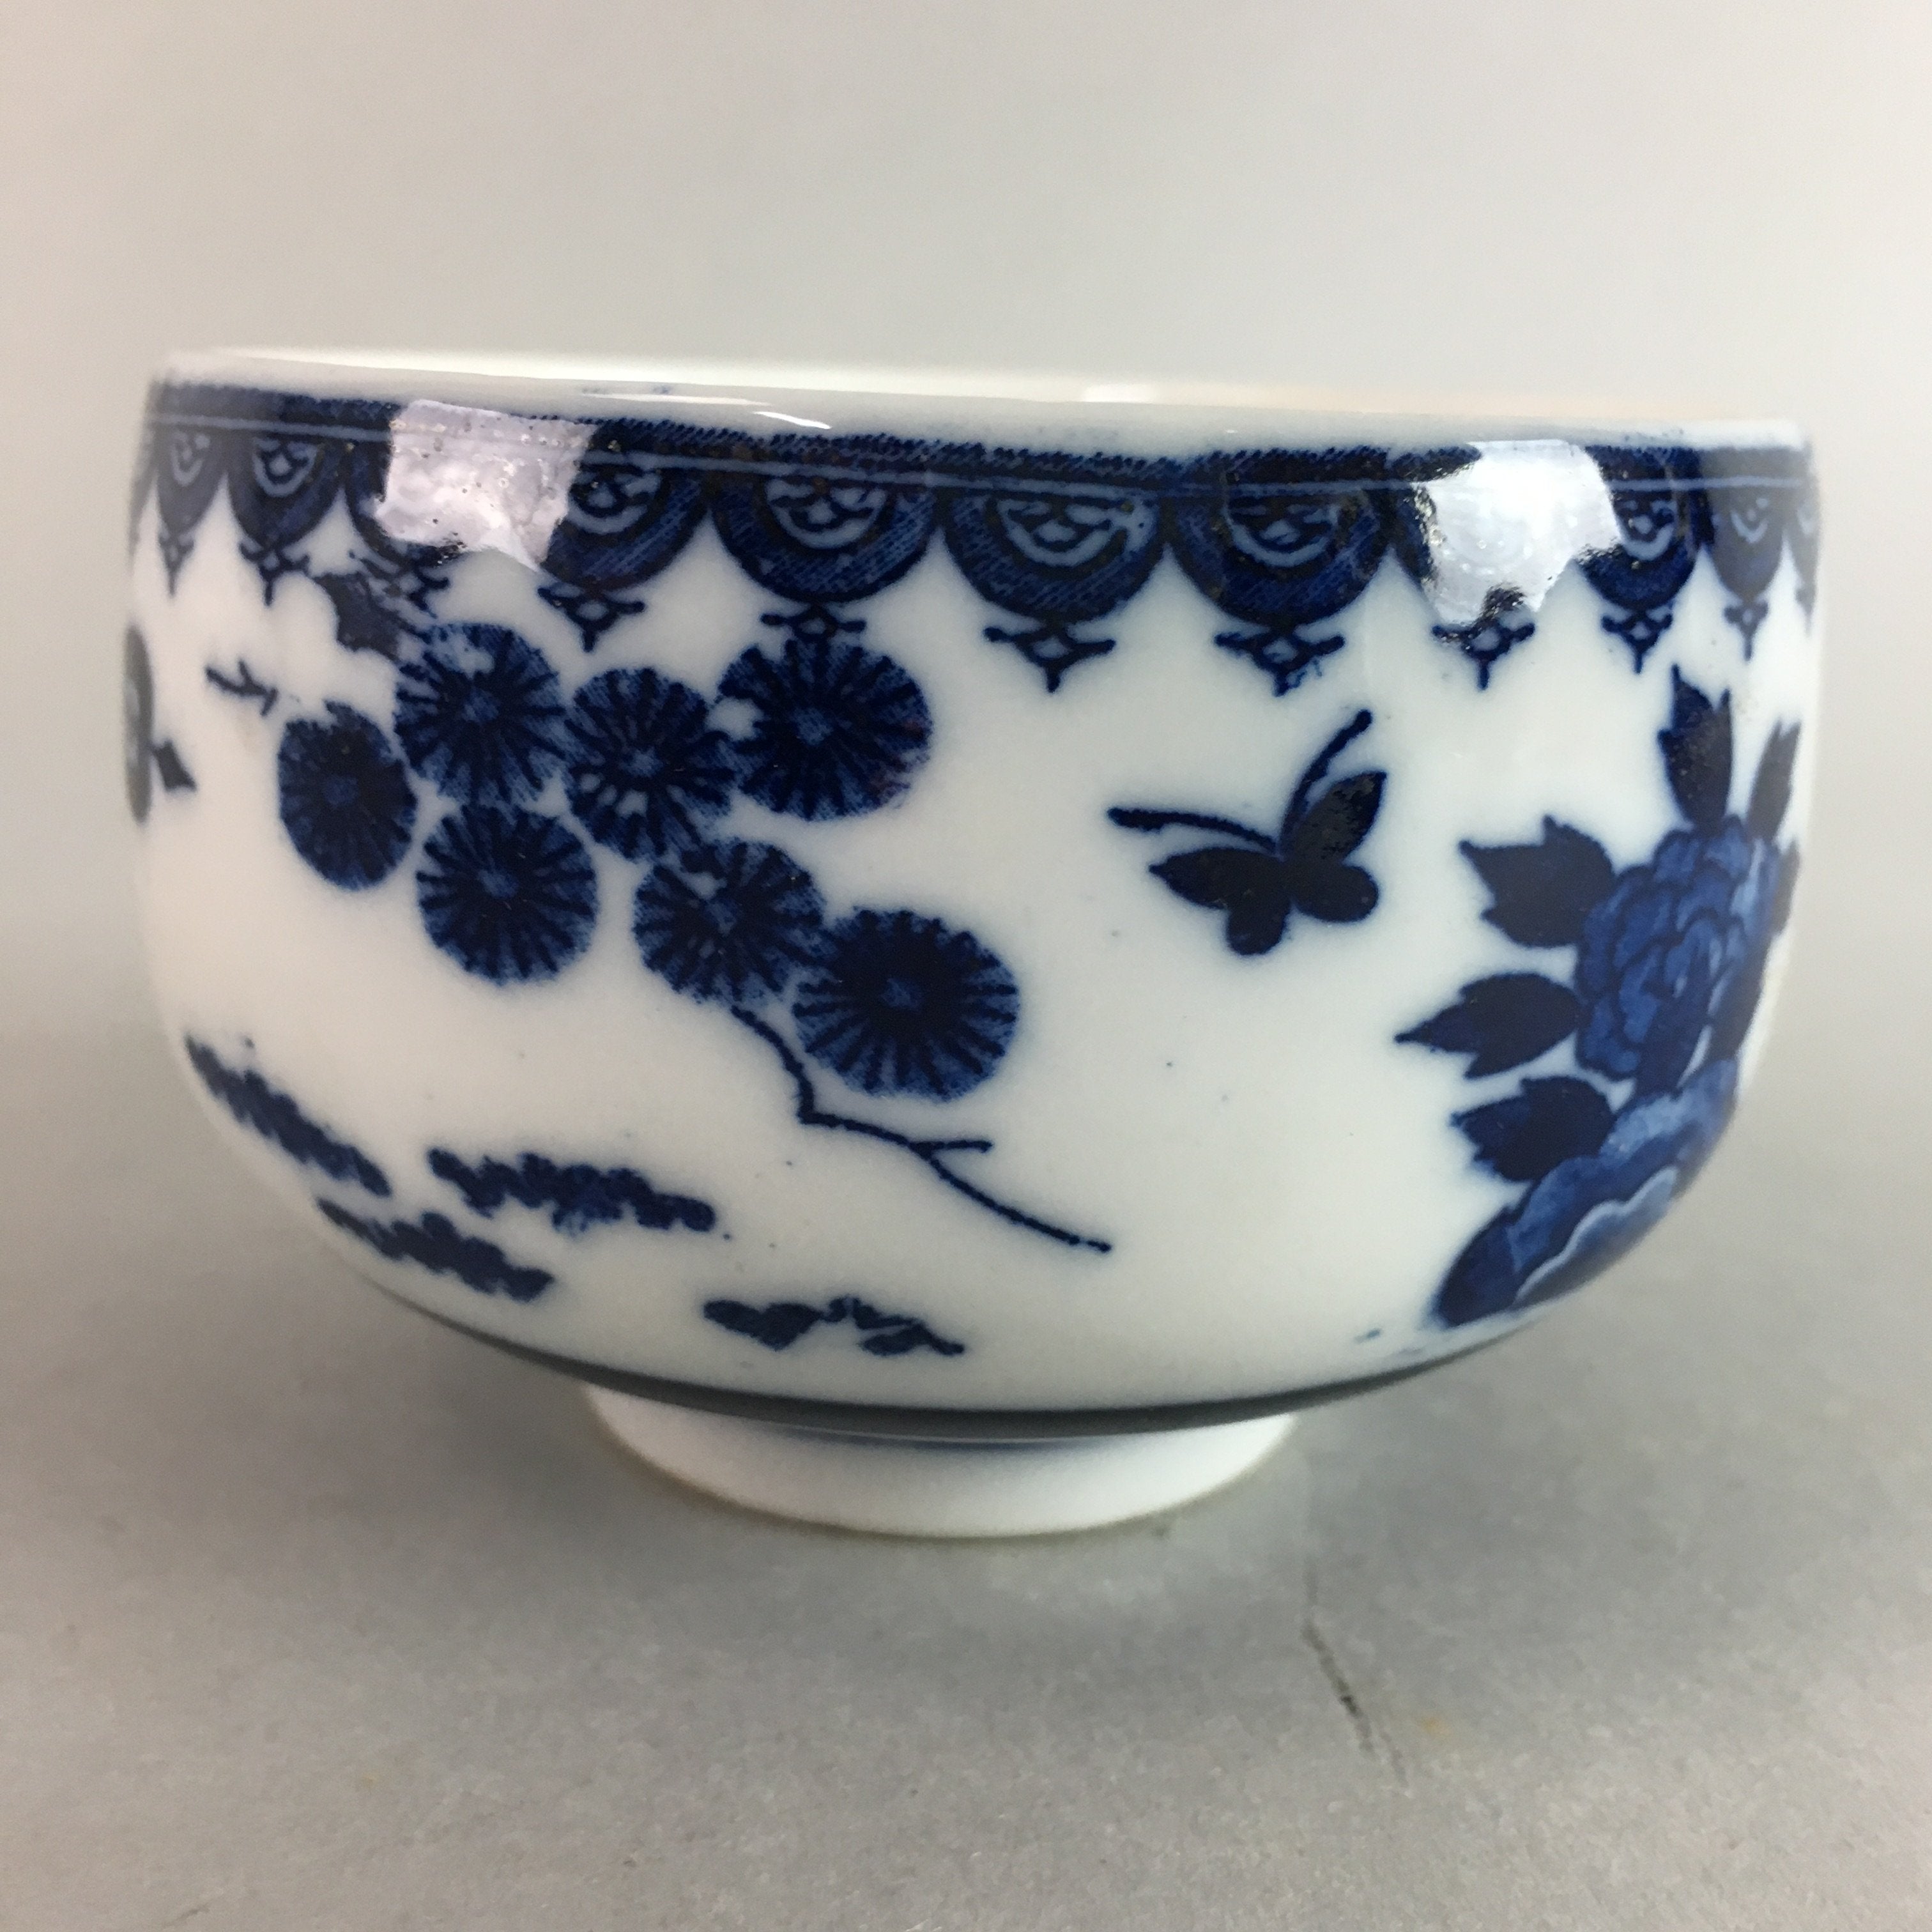 Japanese Porcelain Teacup Vtg Yunomi Sometsuke Blue White Child Sencha PT634